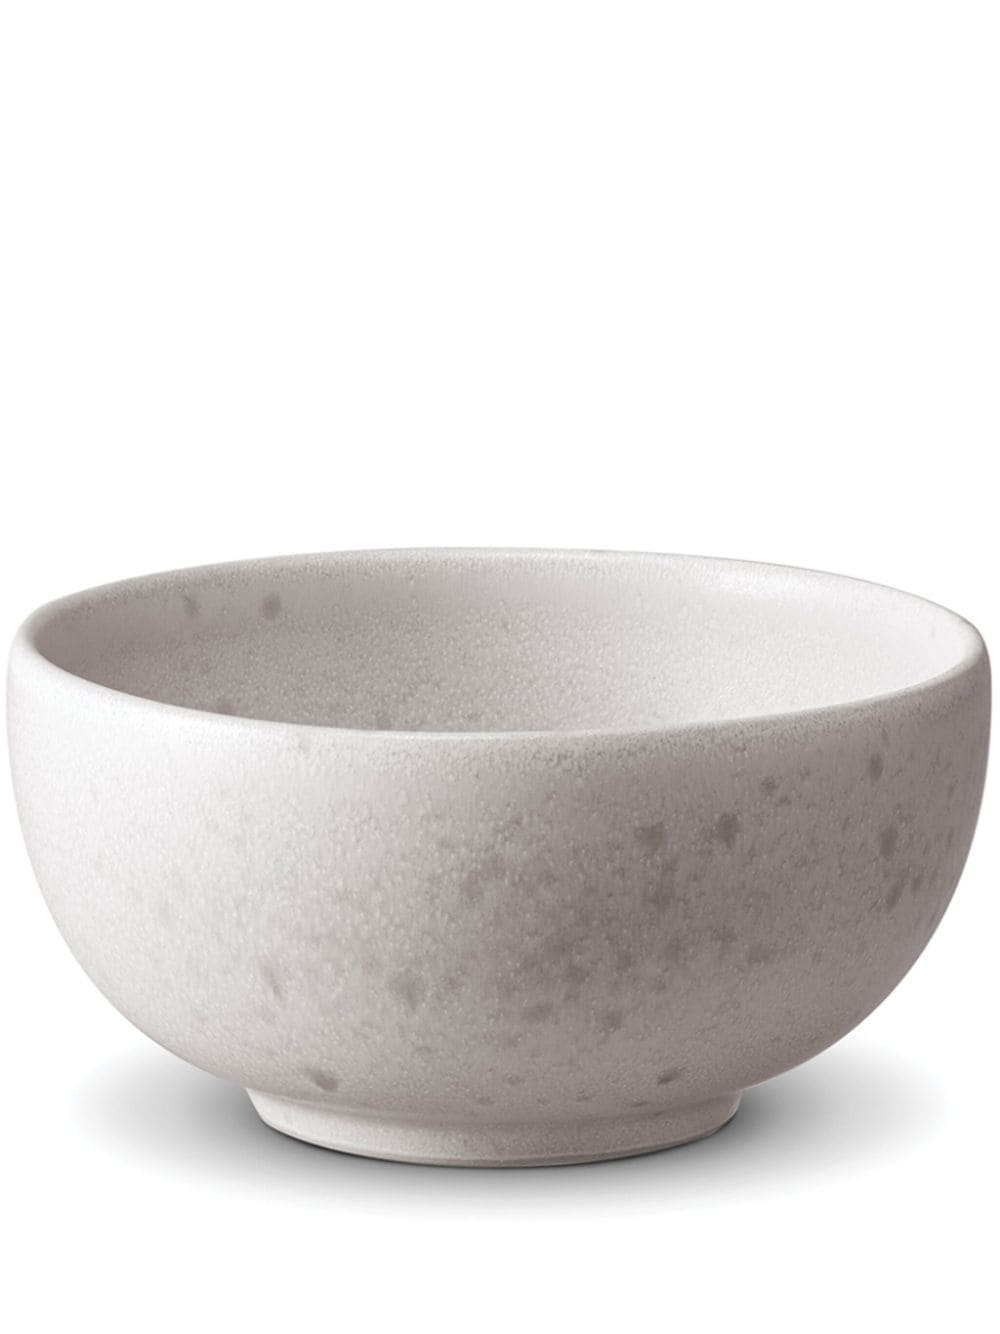 L'Objet Terra porcelain condiment bowl (11cm) - White von L'Objet